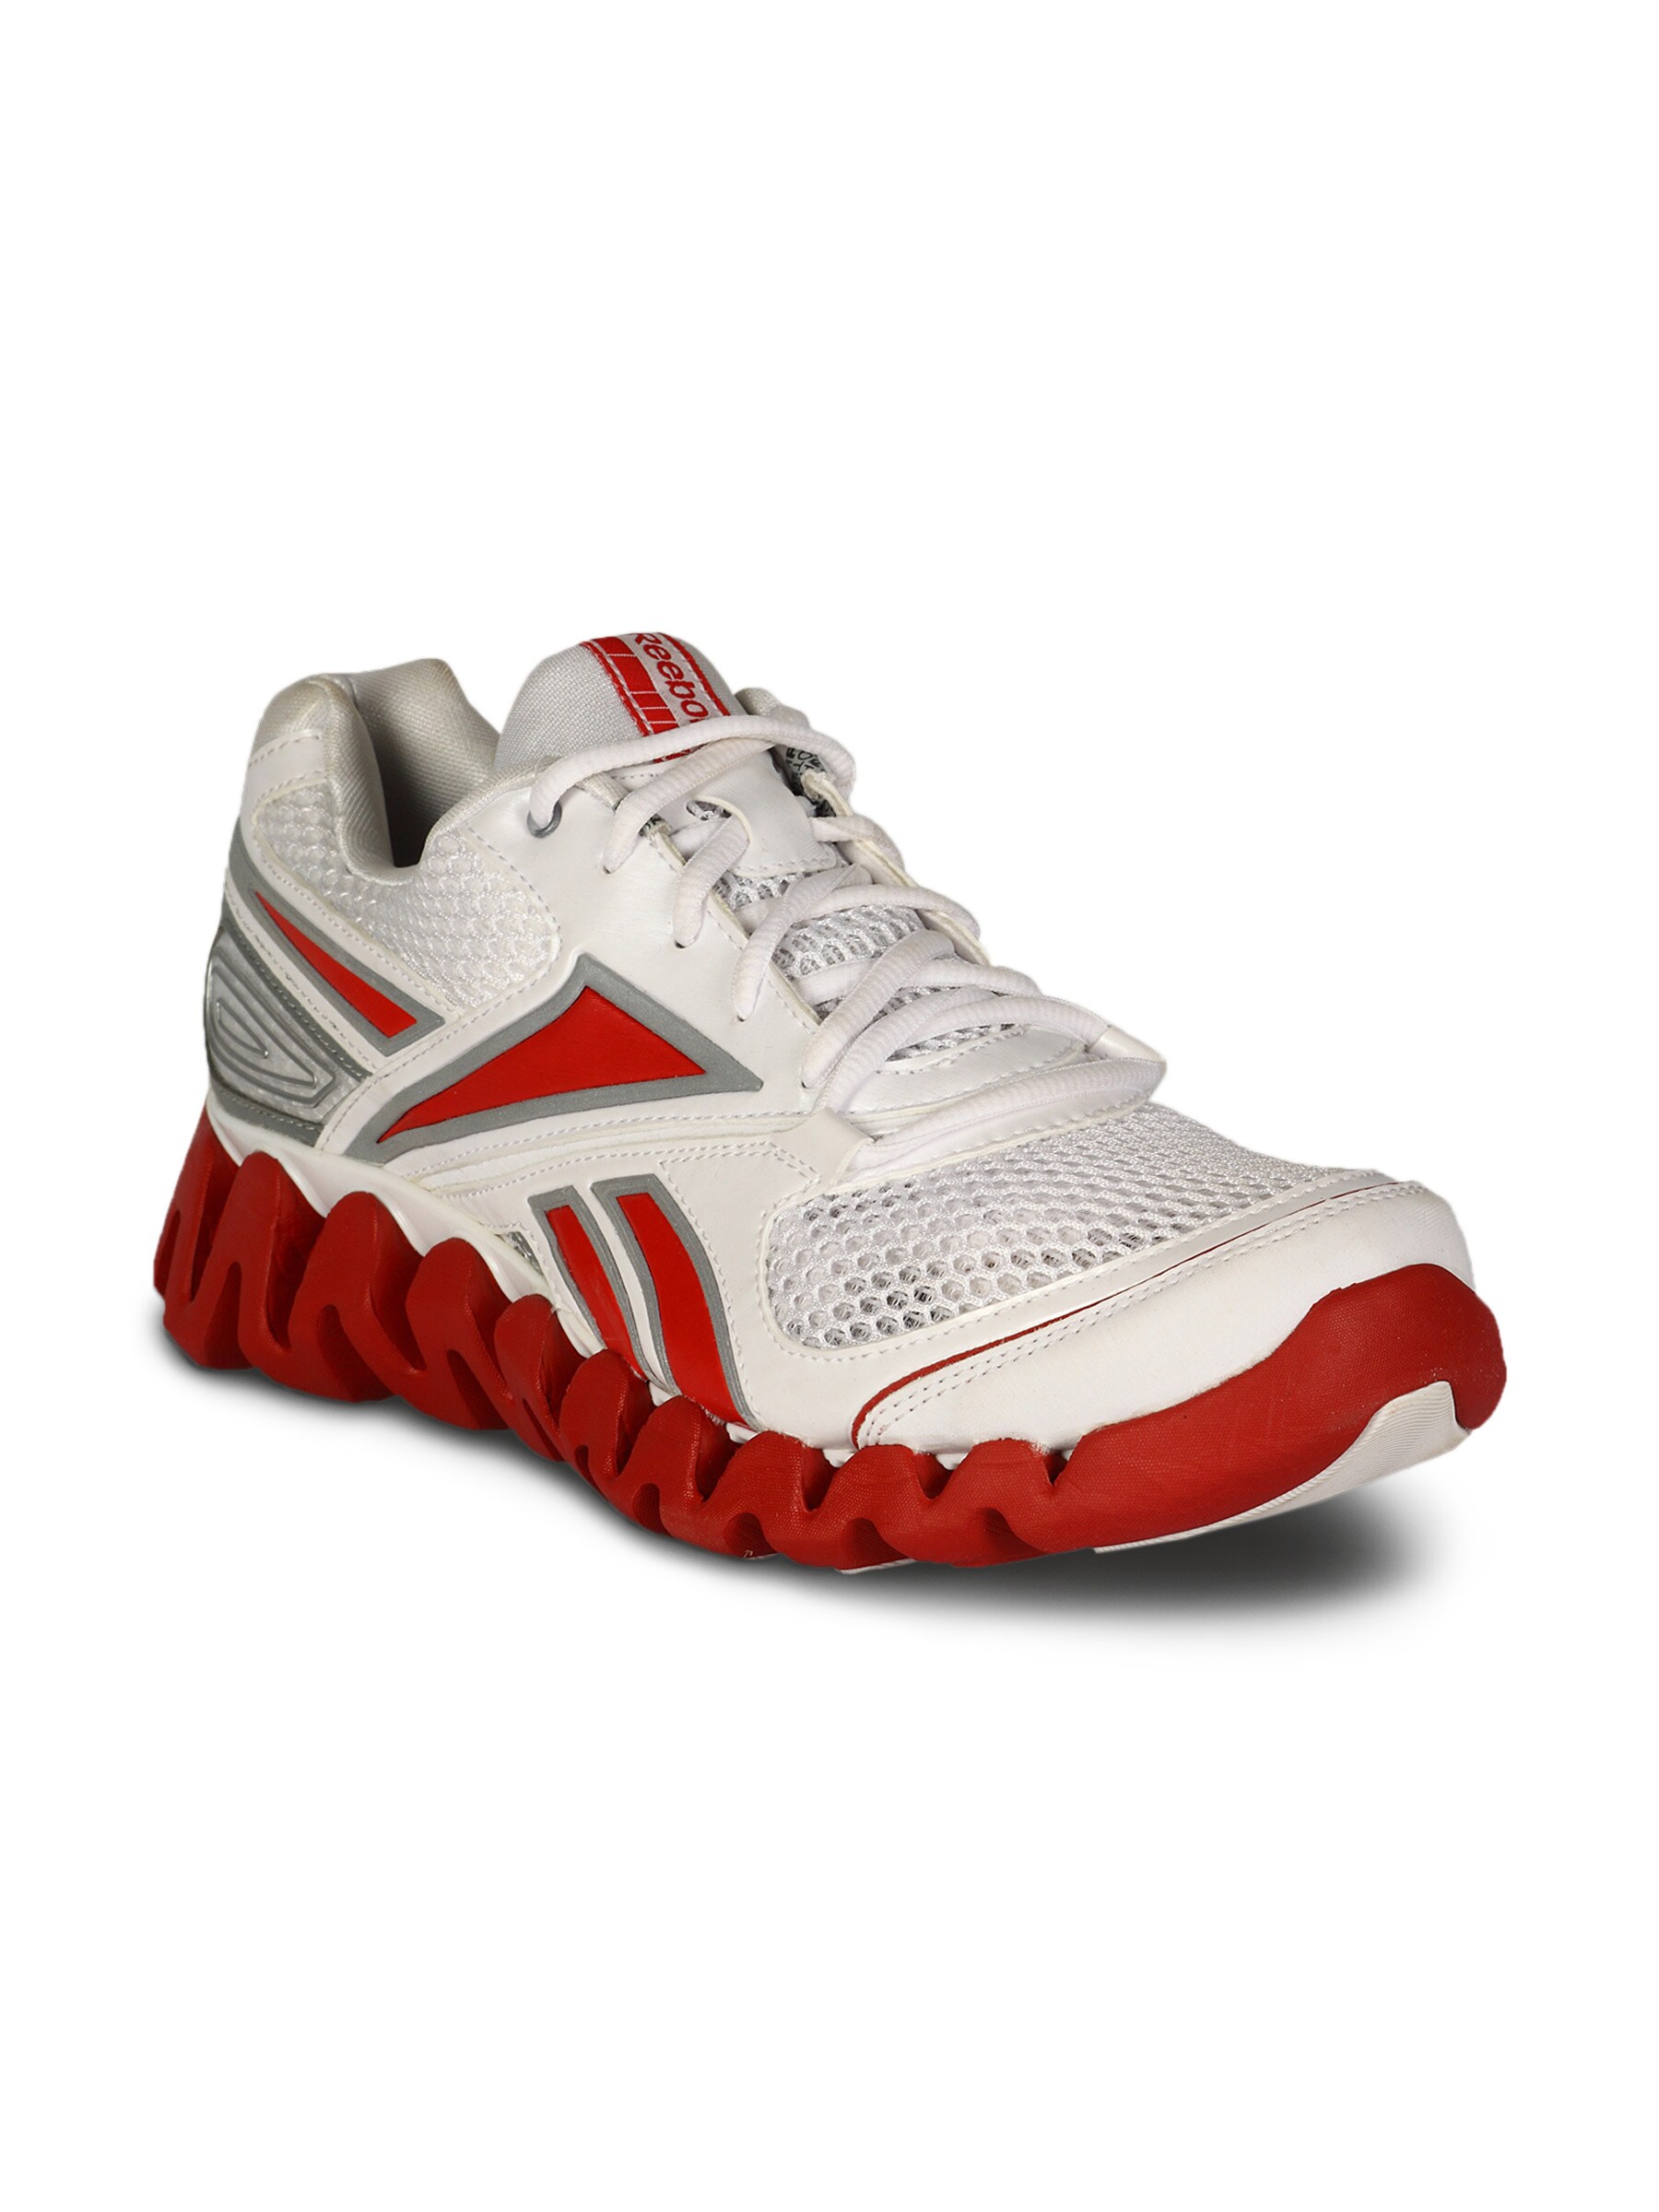 Reebok Men's Zigfuel White Red Shoe